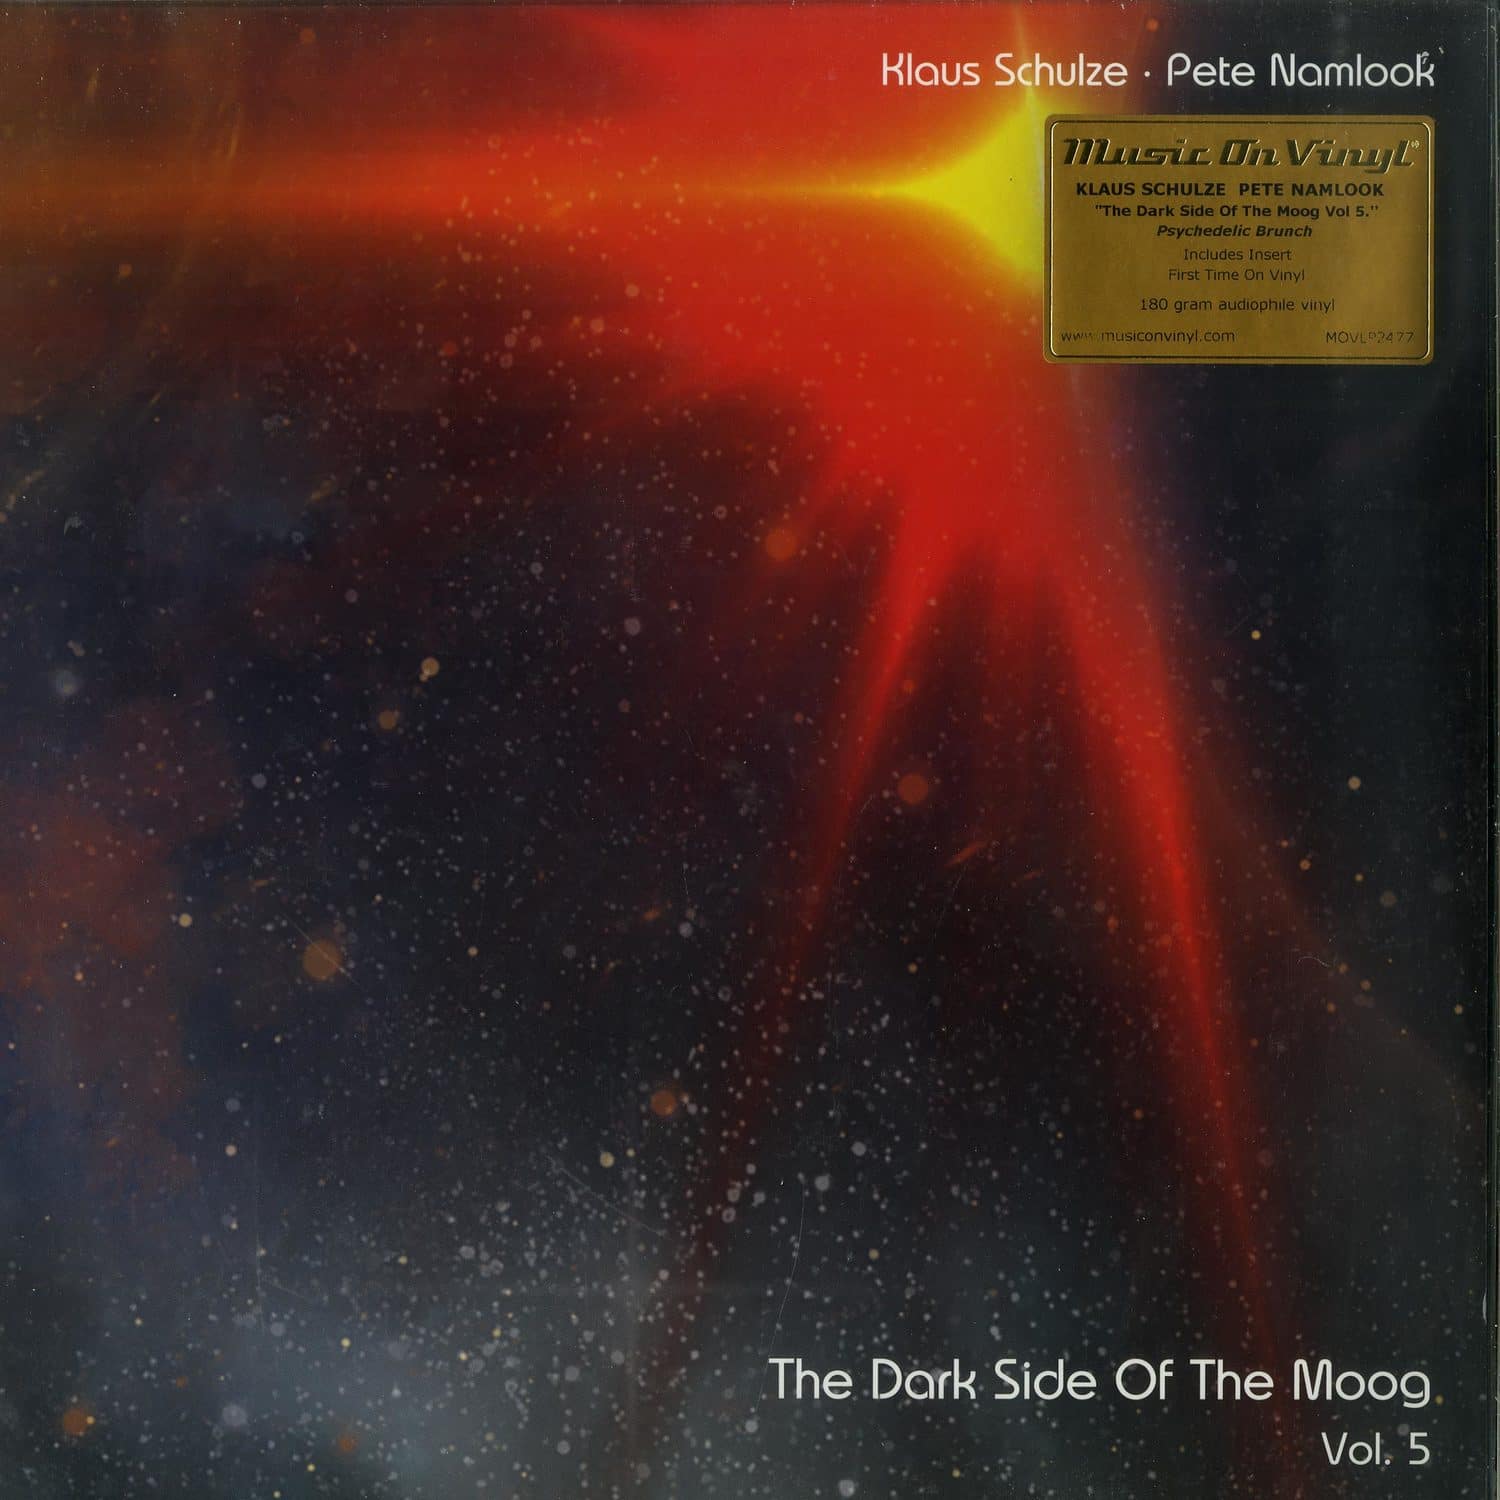 Klaus Schulze & Pete Namlook - DARK SIDE OF THE MOOG VOL. 5 - PSYCHEDELIC BRUNCH 